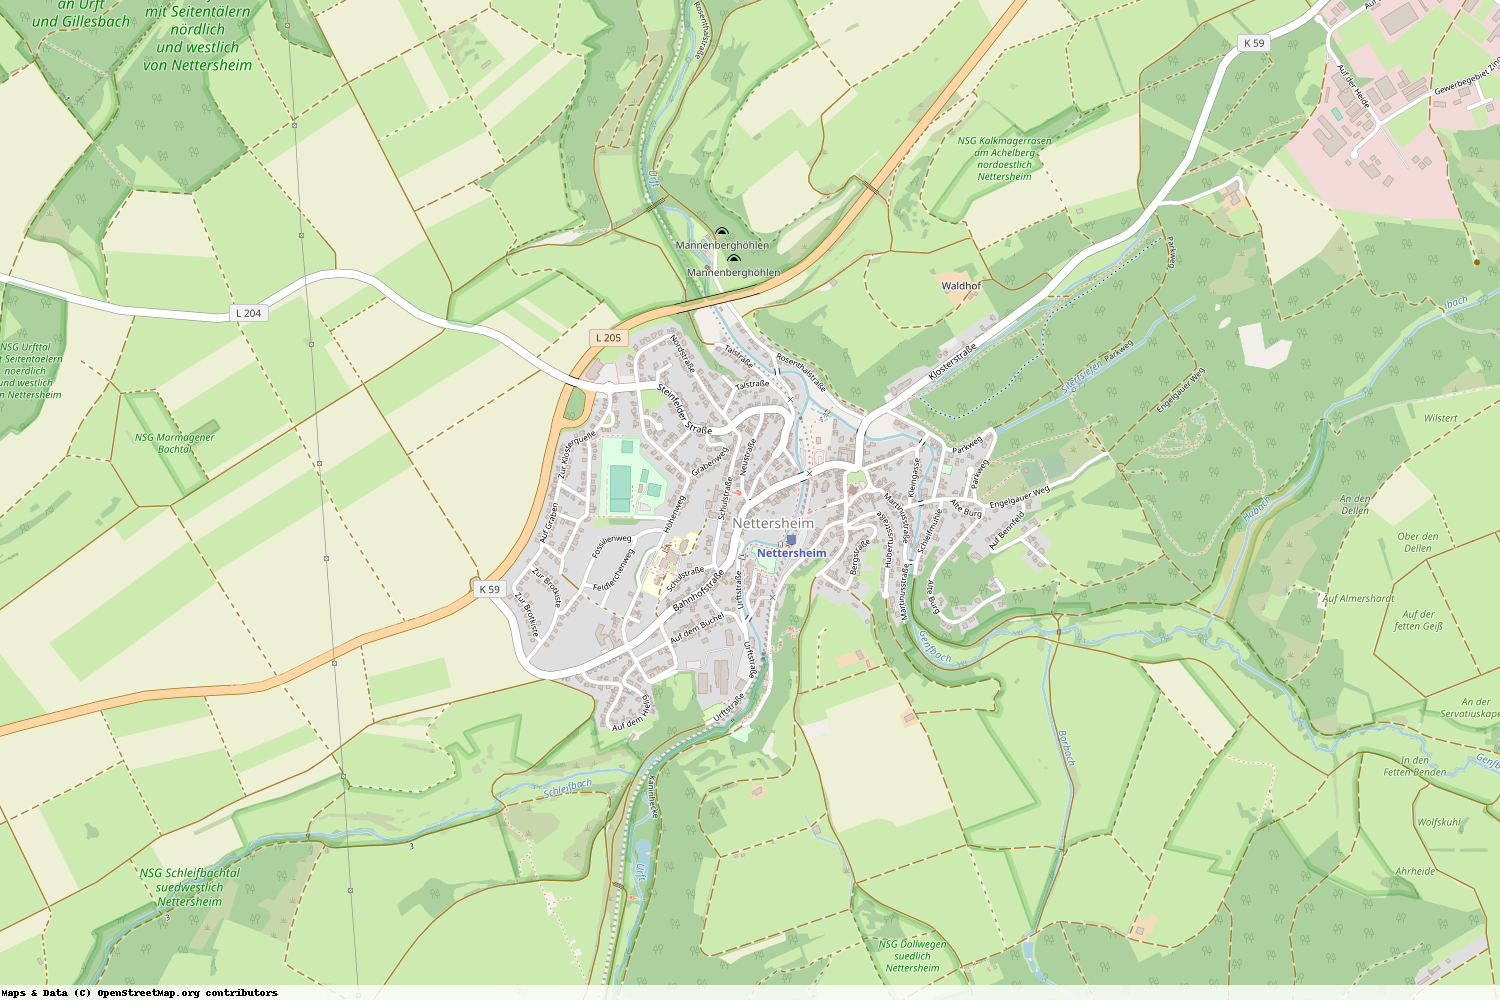 Ist gerade Stromausfall in Nordrhein-Westfalen - Euskirchen - Nettersheim?